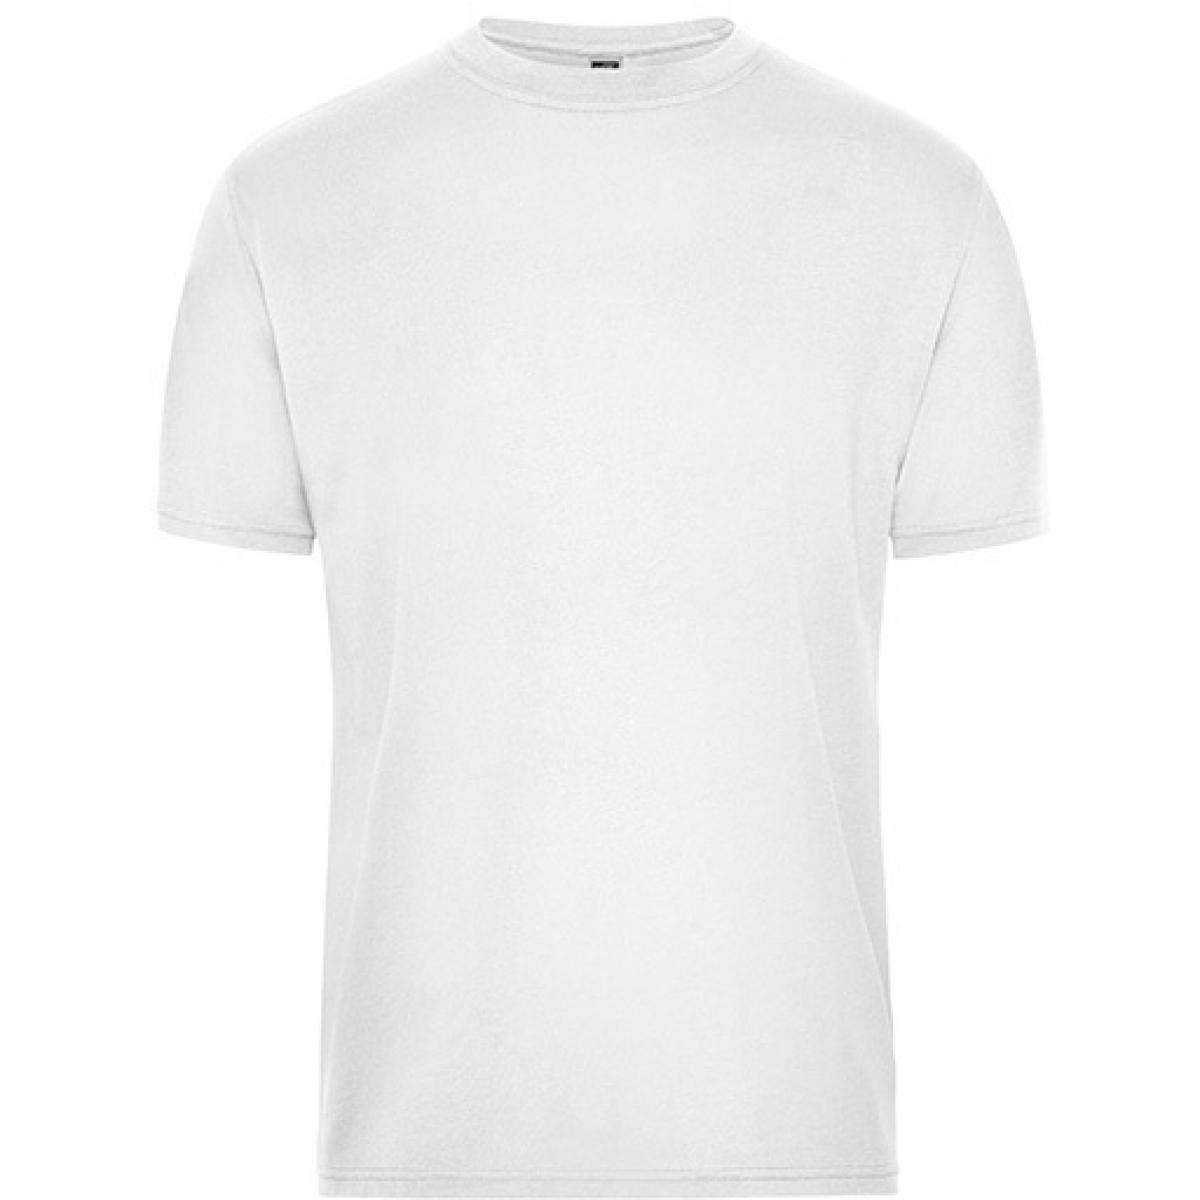 Hersteller: James+Nicholson Herstellernummer: JN1808 Artikelbezeichnung: Men‘s BIO Workwear T-Shirt, Waschbar bis 60 °C Farbe: White